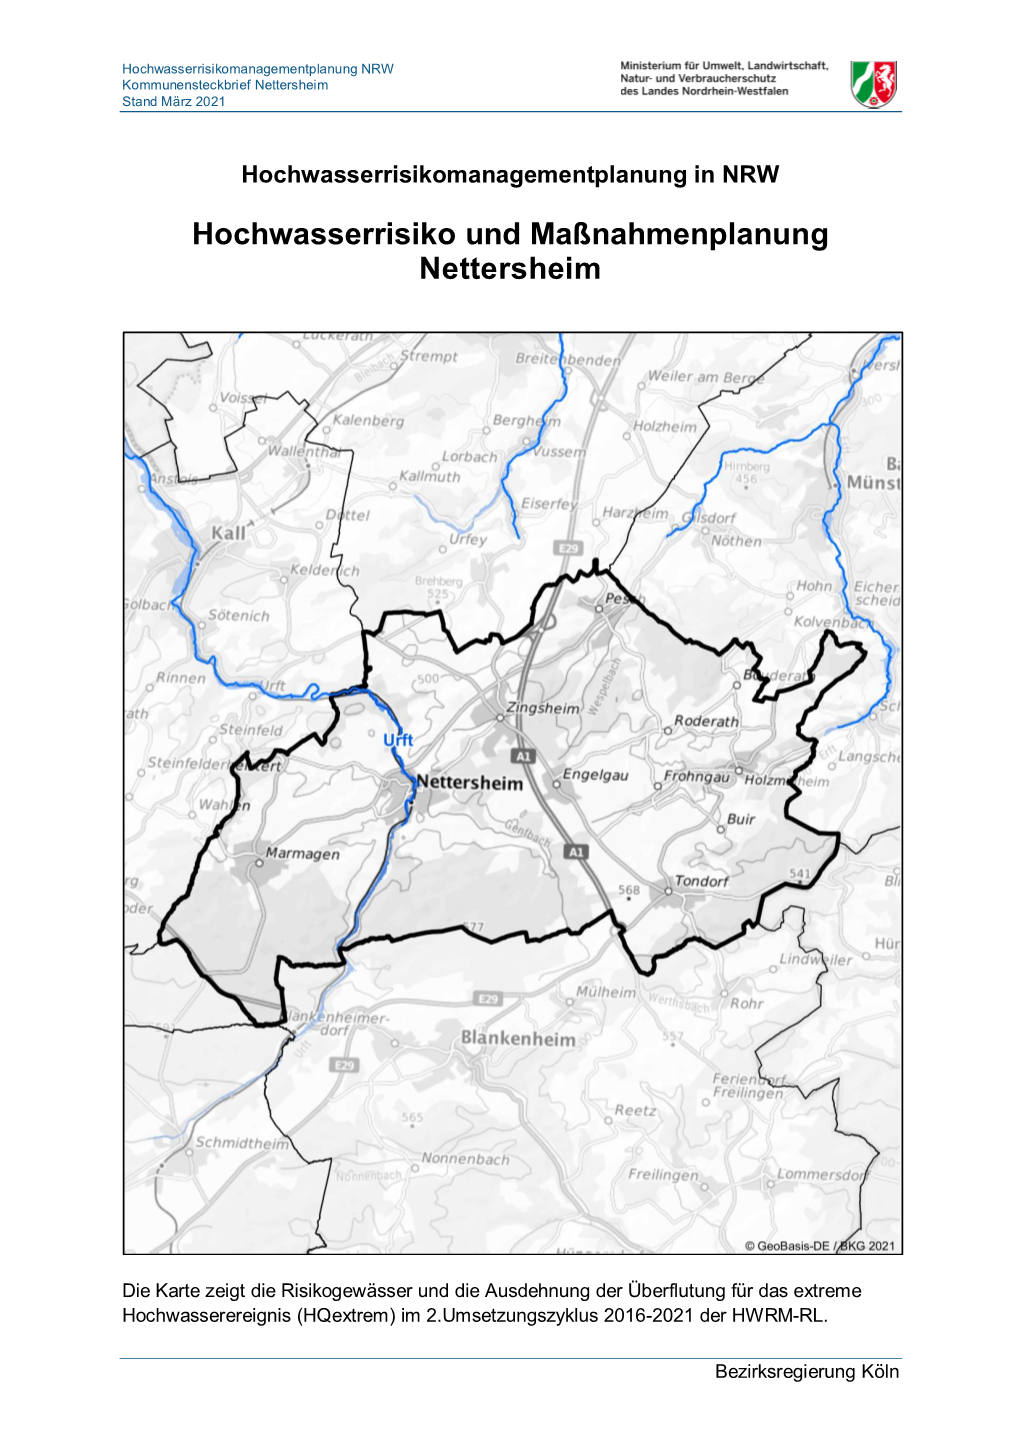 Hochwasserrisiko Und Maßnahmenplanung Nettersheim